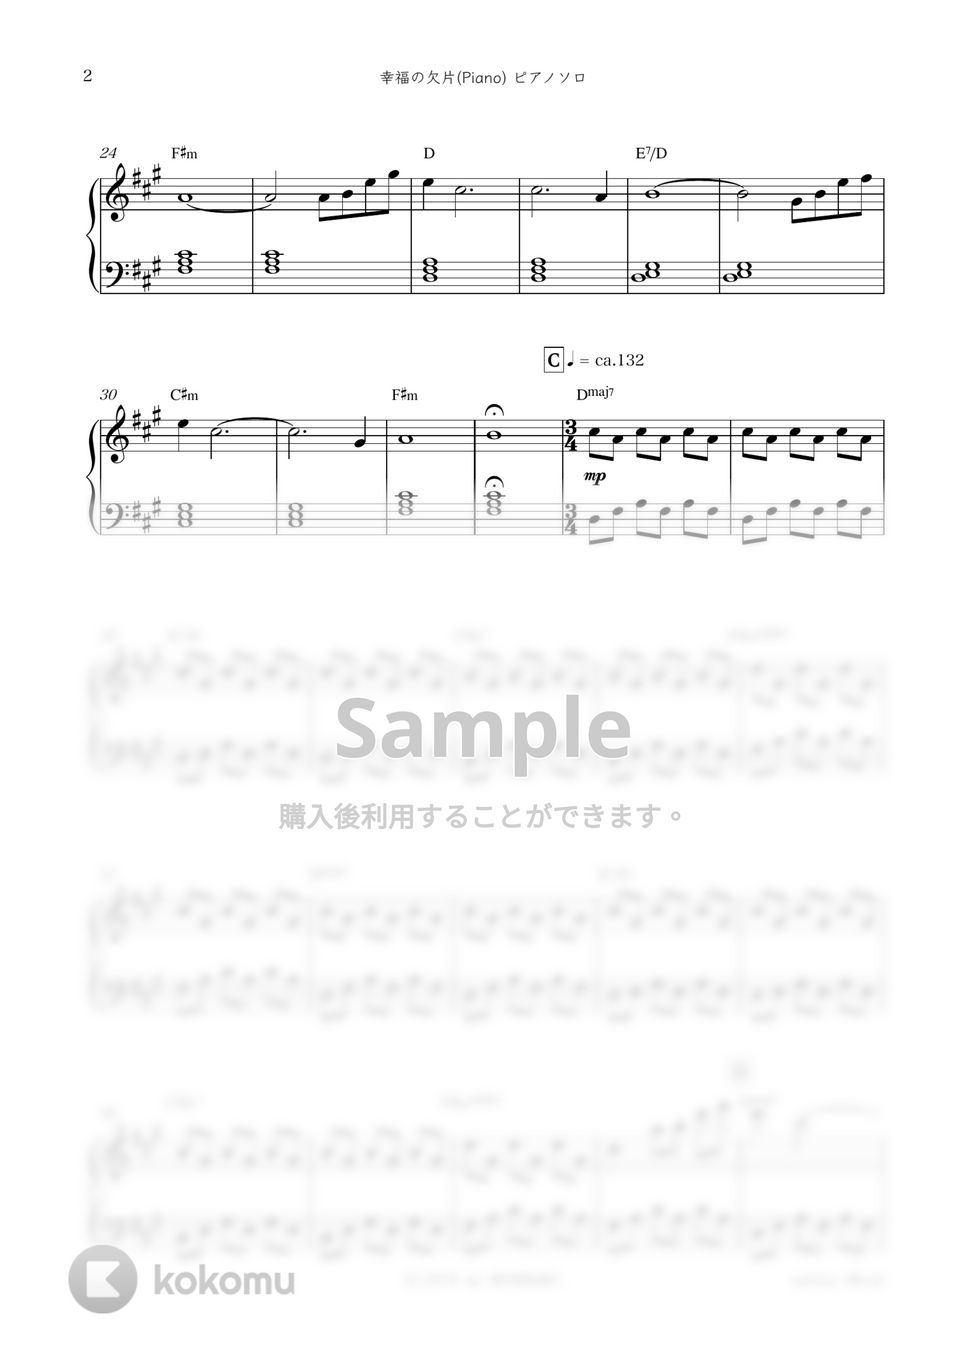 ドラマ『中学聖日記』OST - 幸福の欠片 (Piano) by sammy